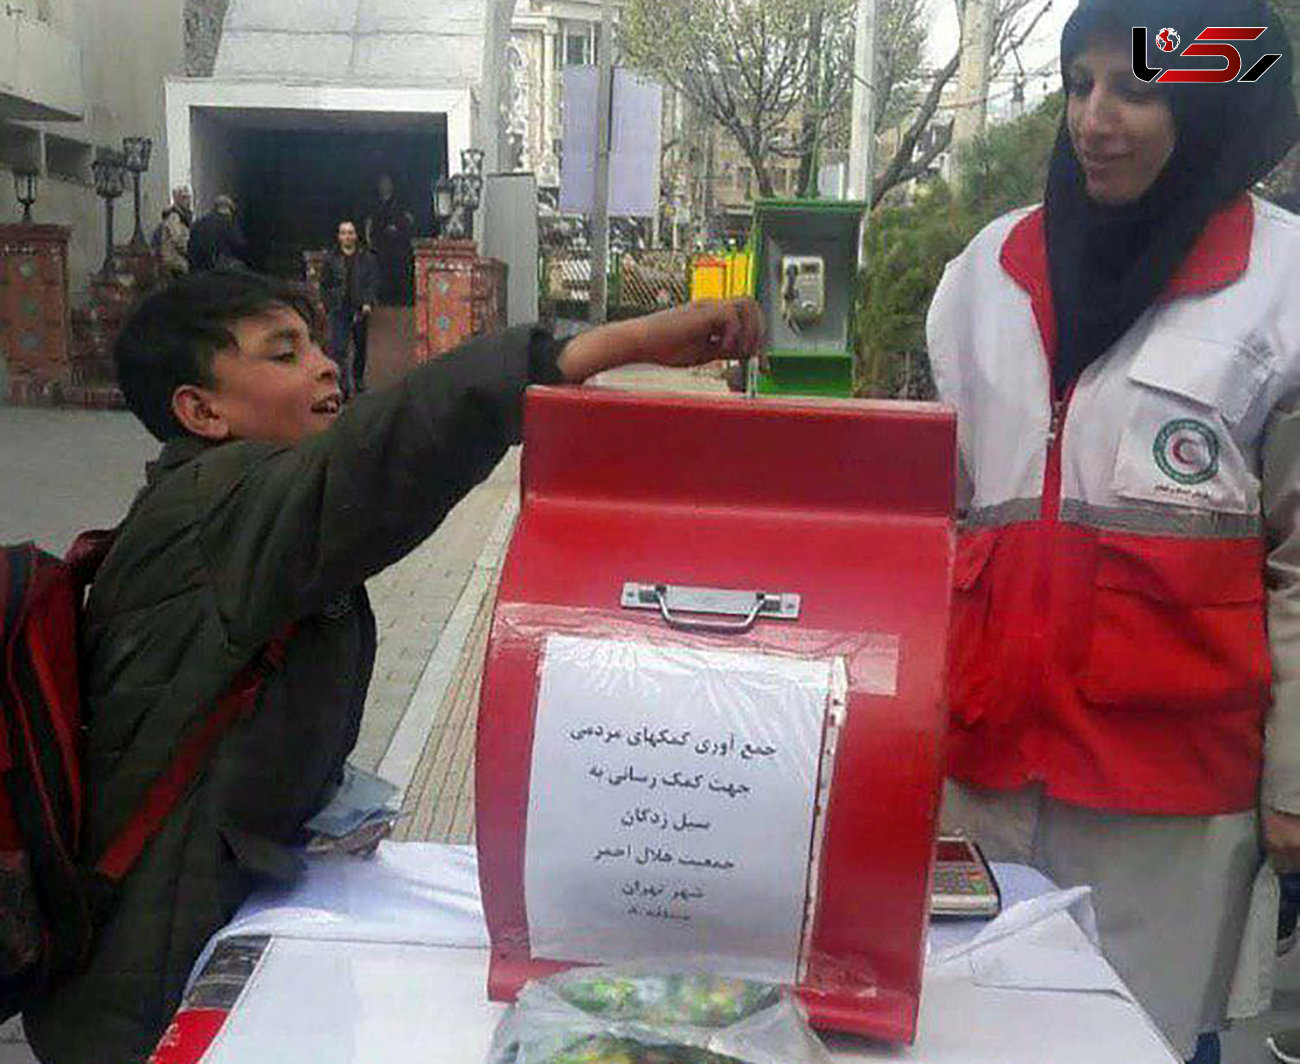 کودک کار تهران اشک همه را درآورد / او درآمدش را در اختیار سیل زدگان قرار داد + عکس 